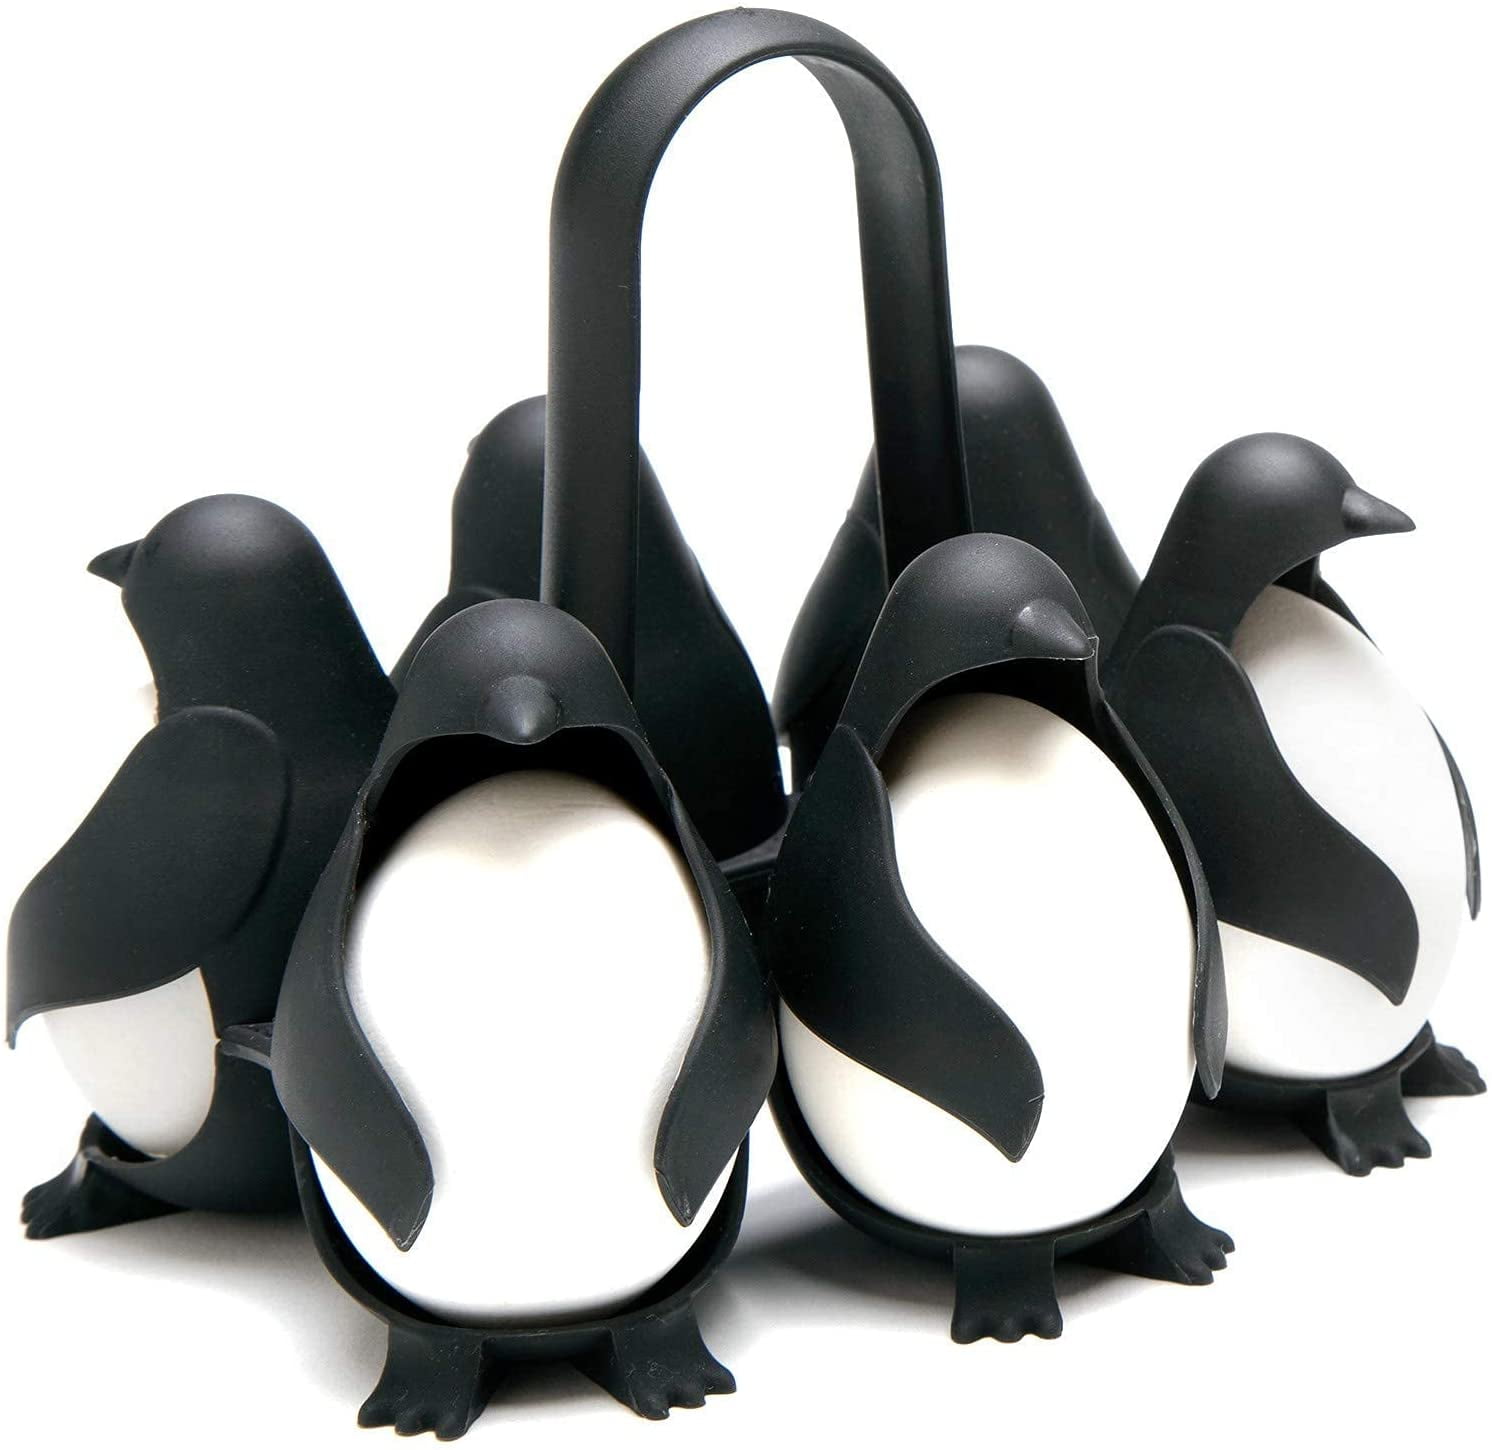 Penguin 3-in-1 Egg Holder Design!!!!